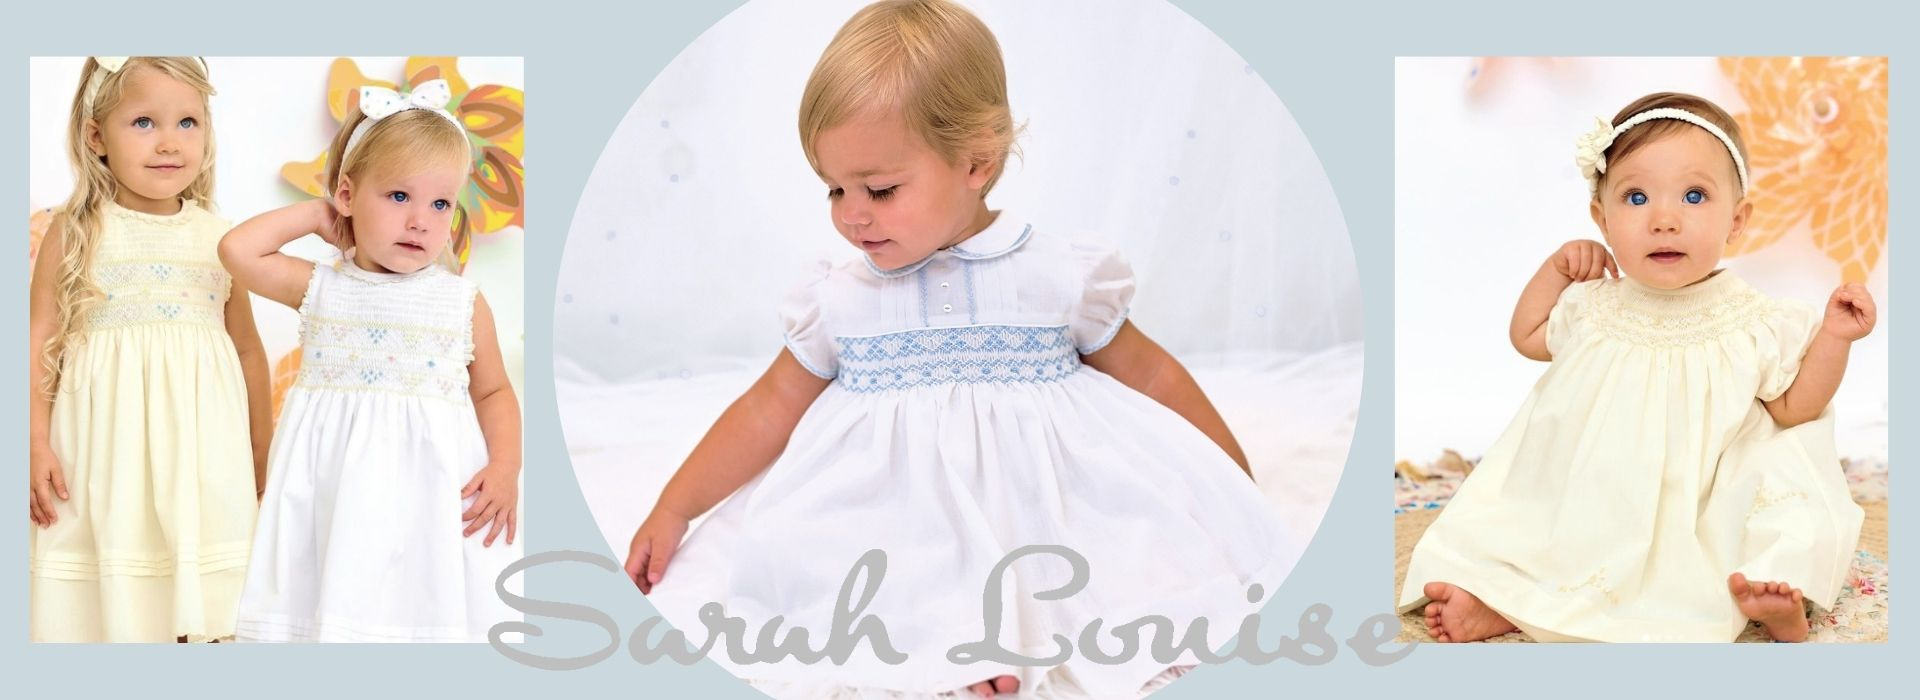 Sarah Louise Dresses & Baby Clothes - Village Kids